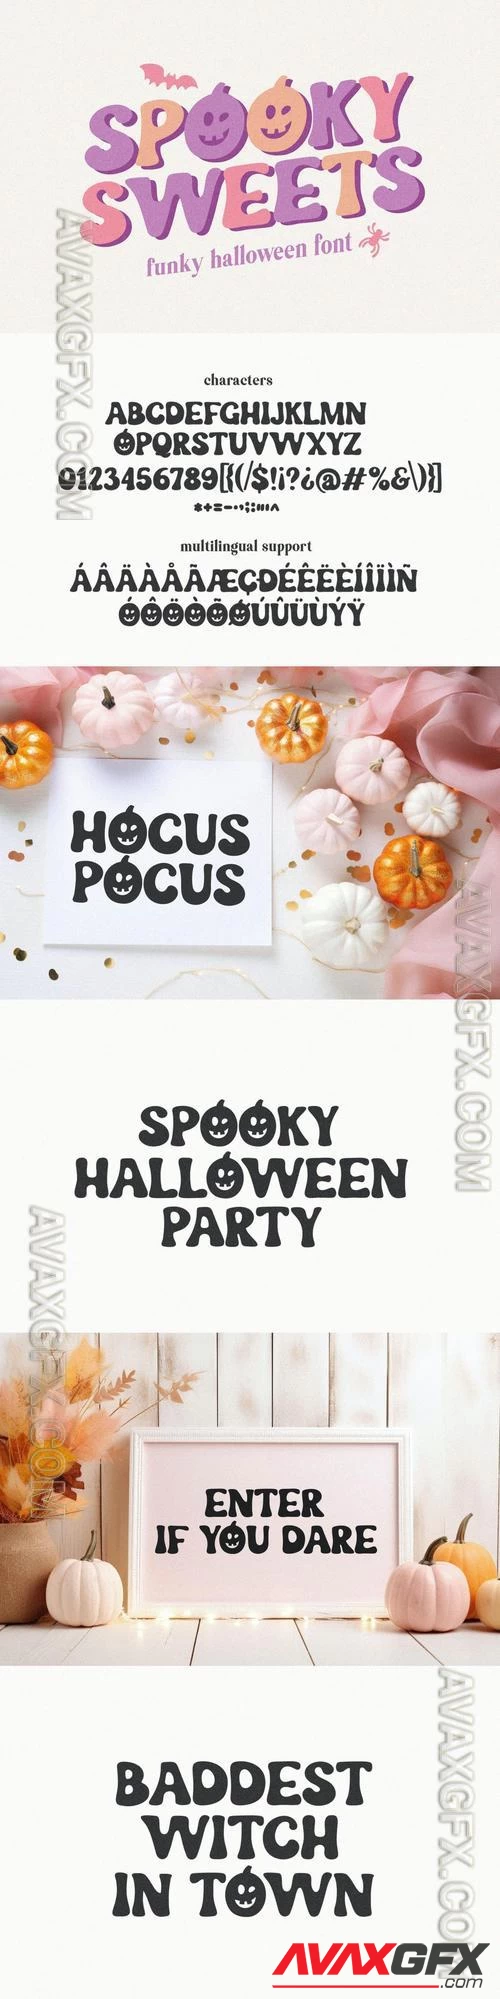 Spooky Sweets Funky Halloween Font